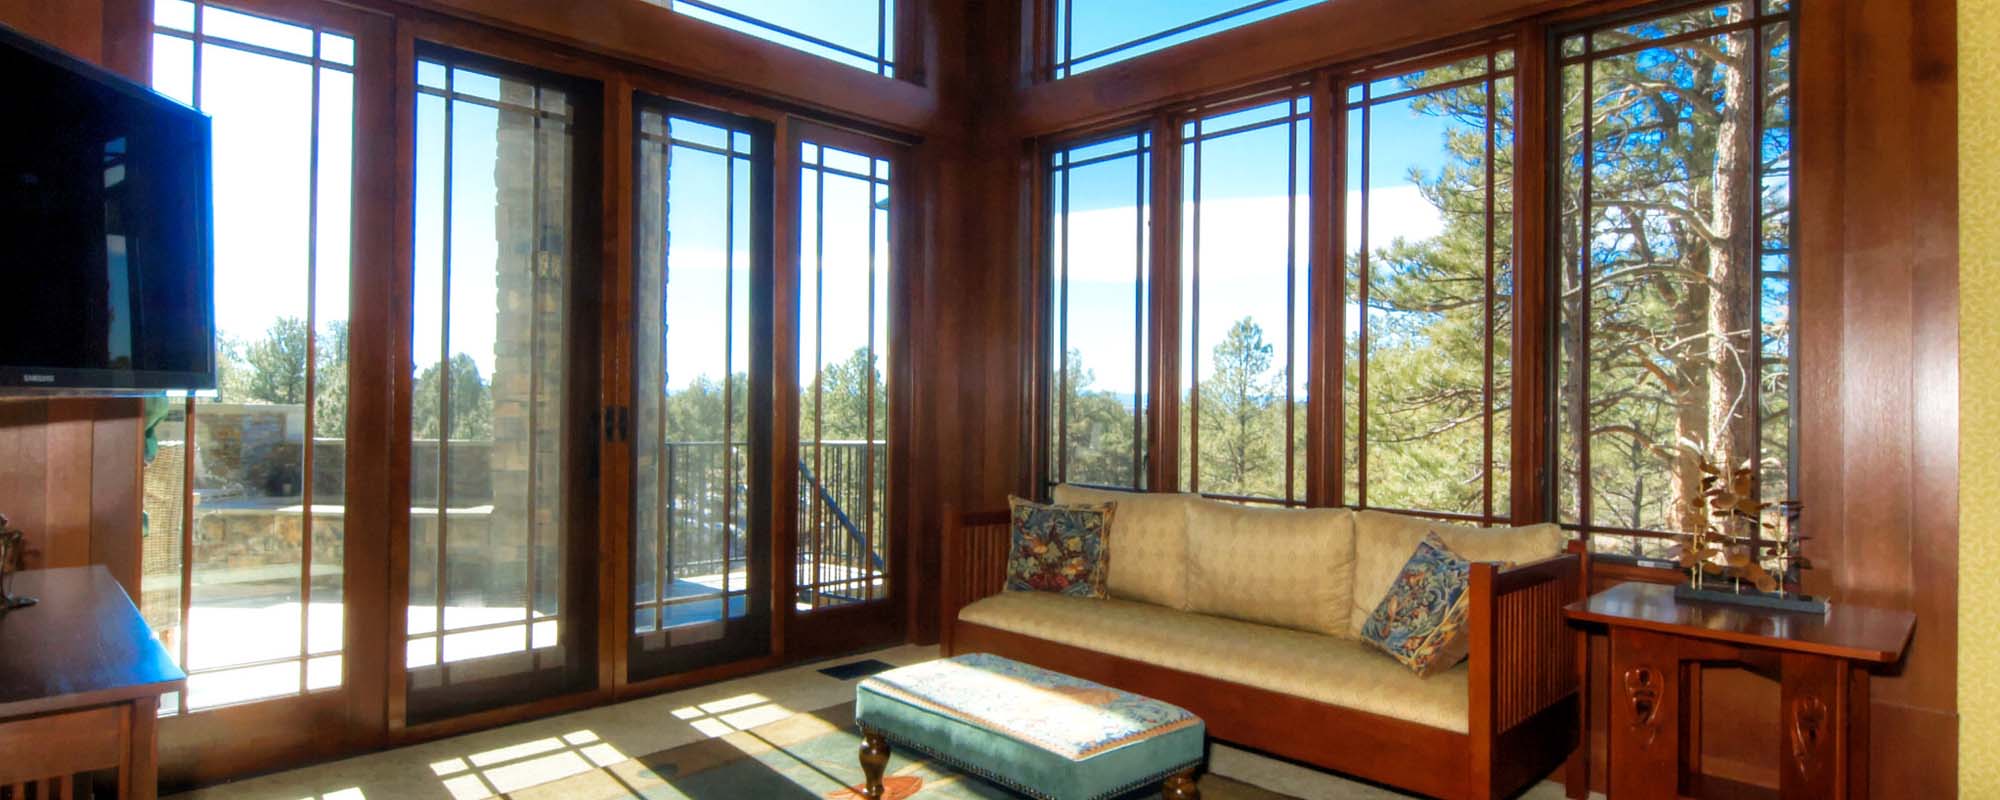 beautiful custom NJ sunroom new home builder luxury sunroom wood trim sunroom